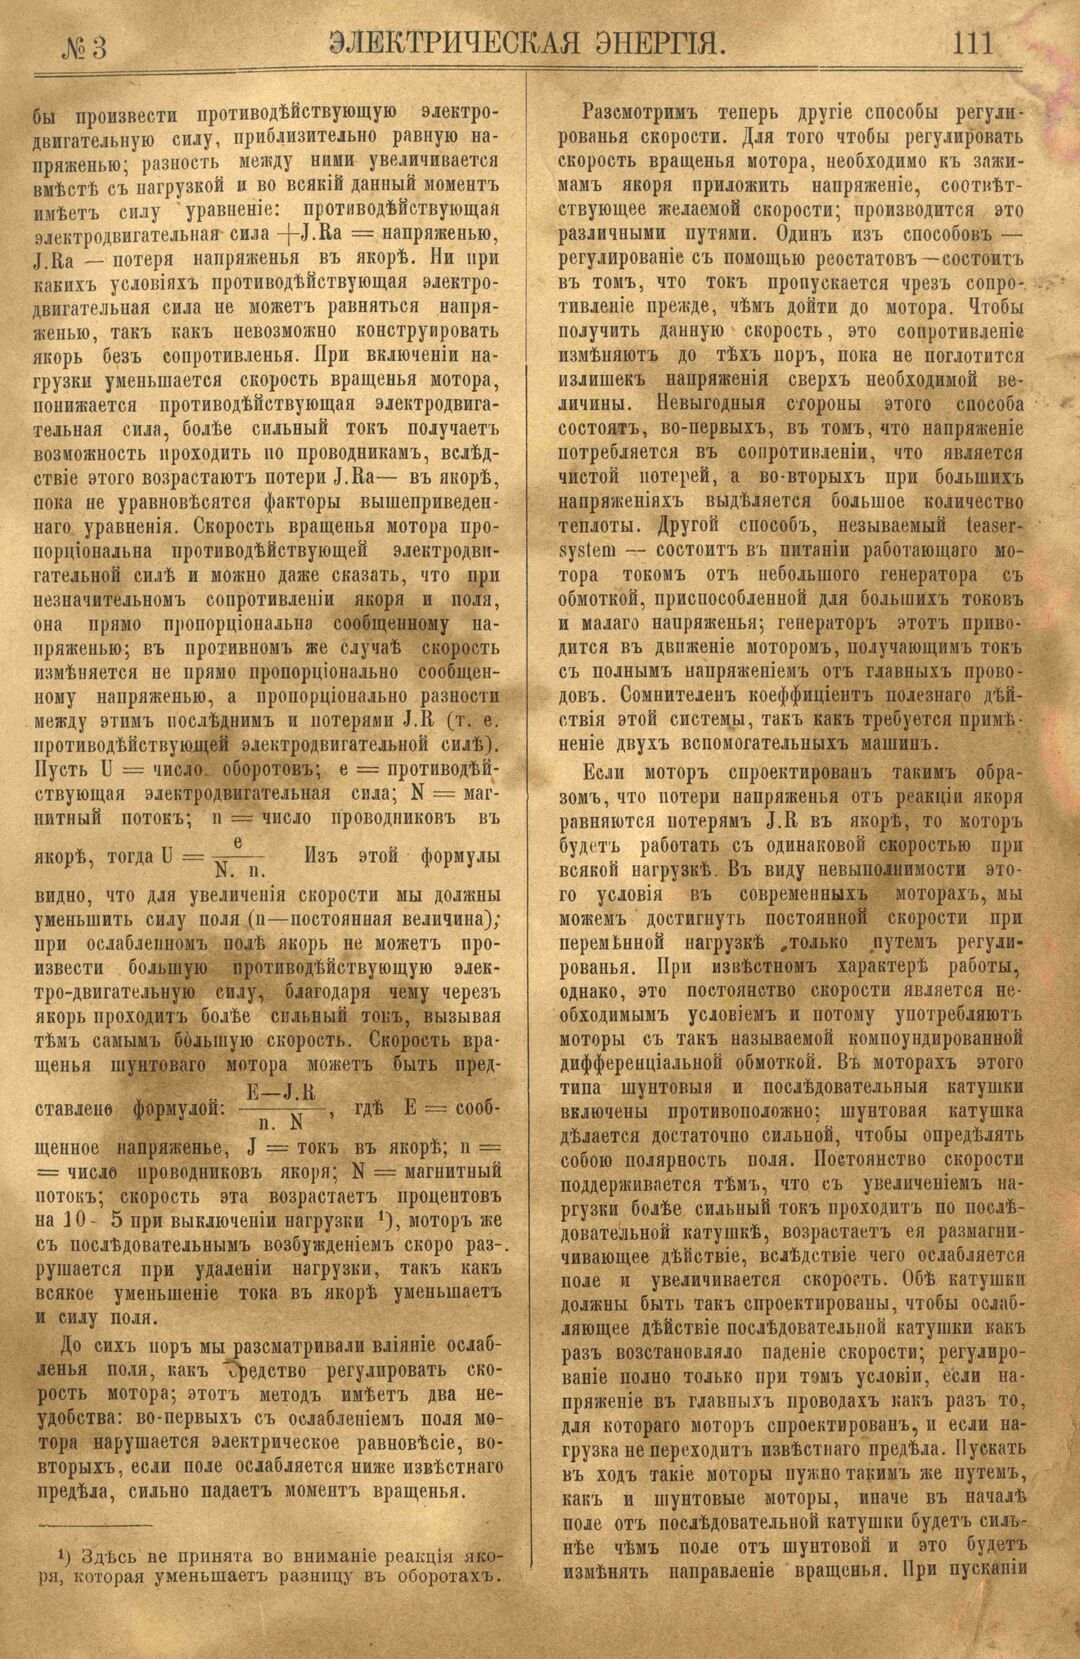 Рис. 1. Журнал Электрическая Энергiя, 3 номер, март, 1904 года, страница 111